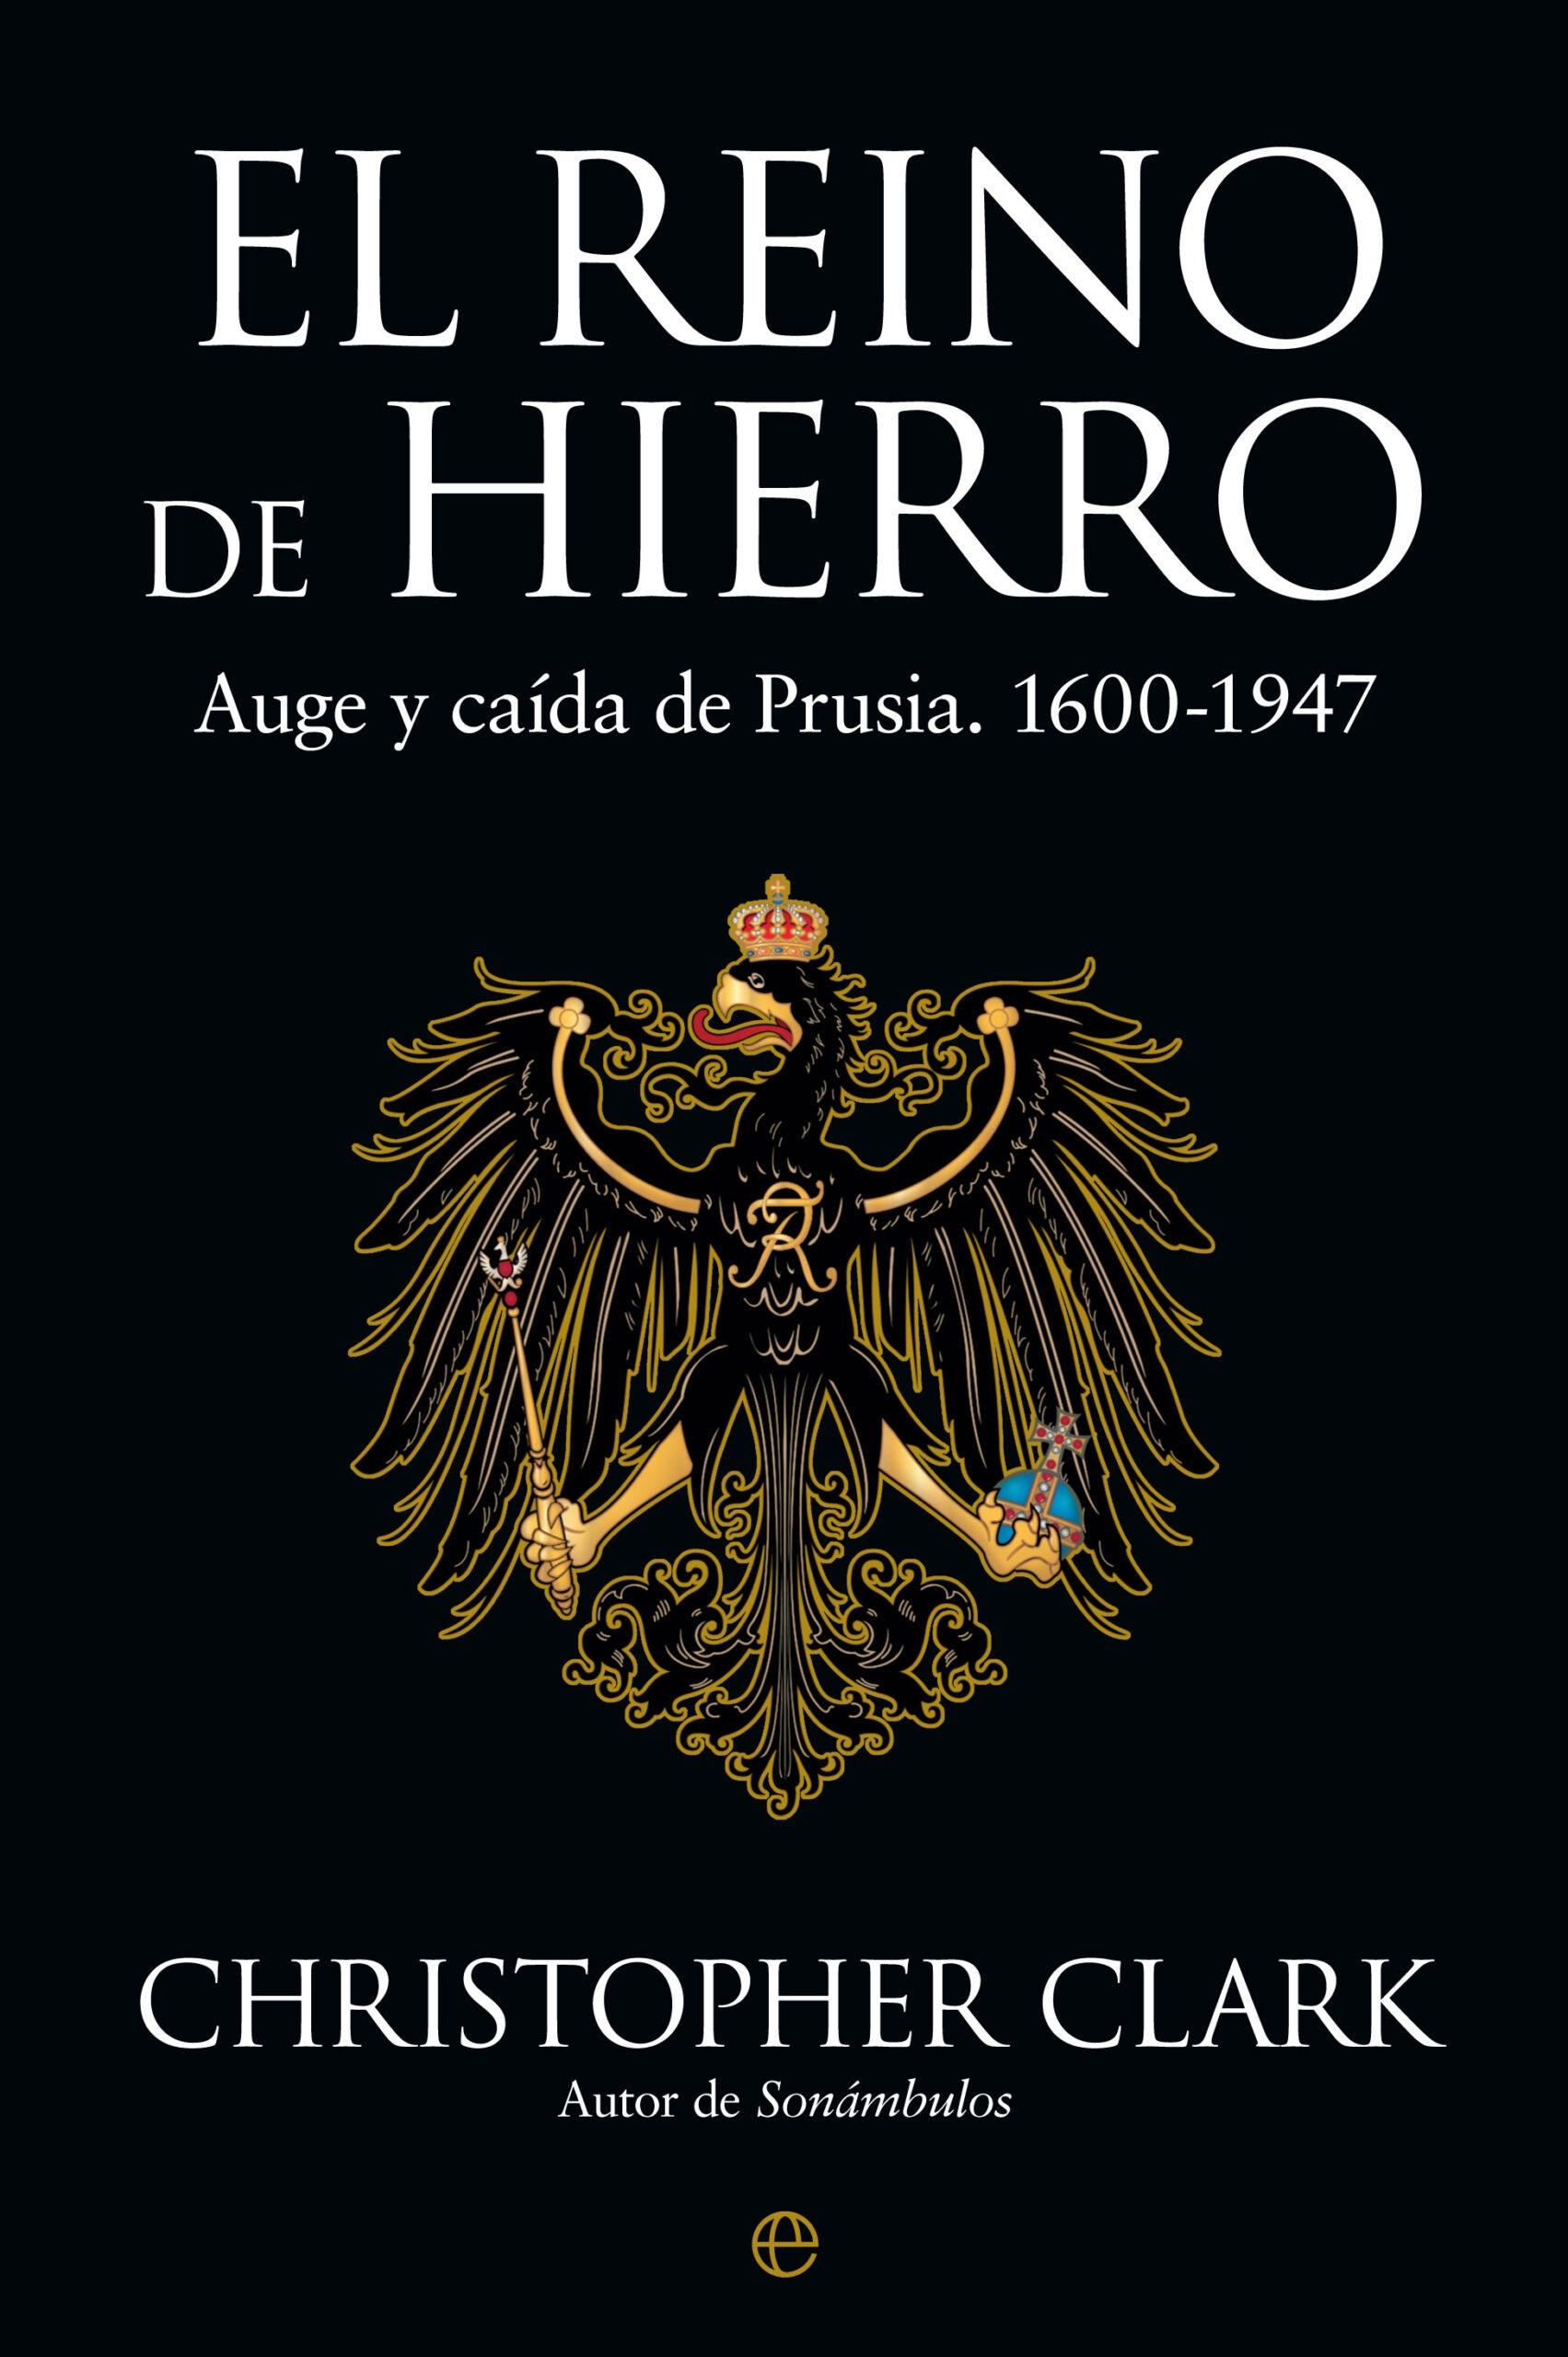 El Reino de Hierro "Auge y caída de Prusia. 1600-1947"